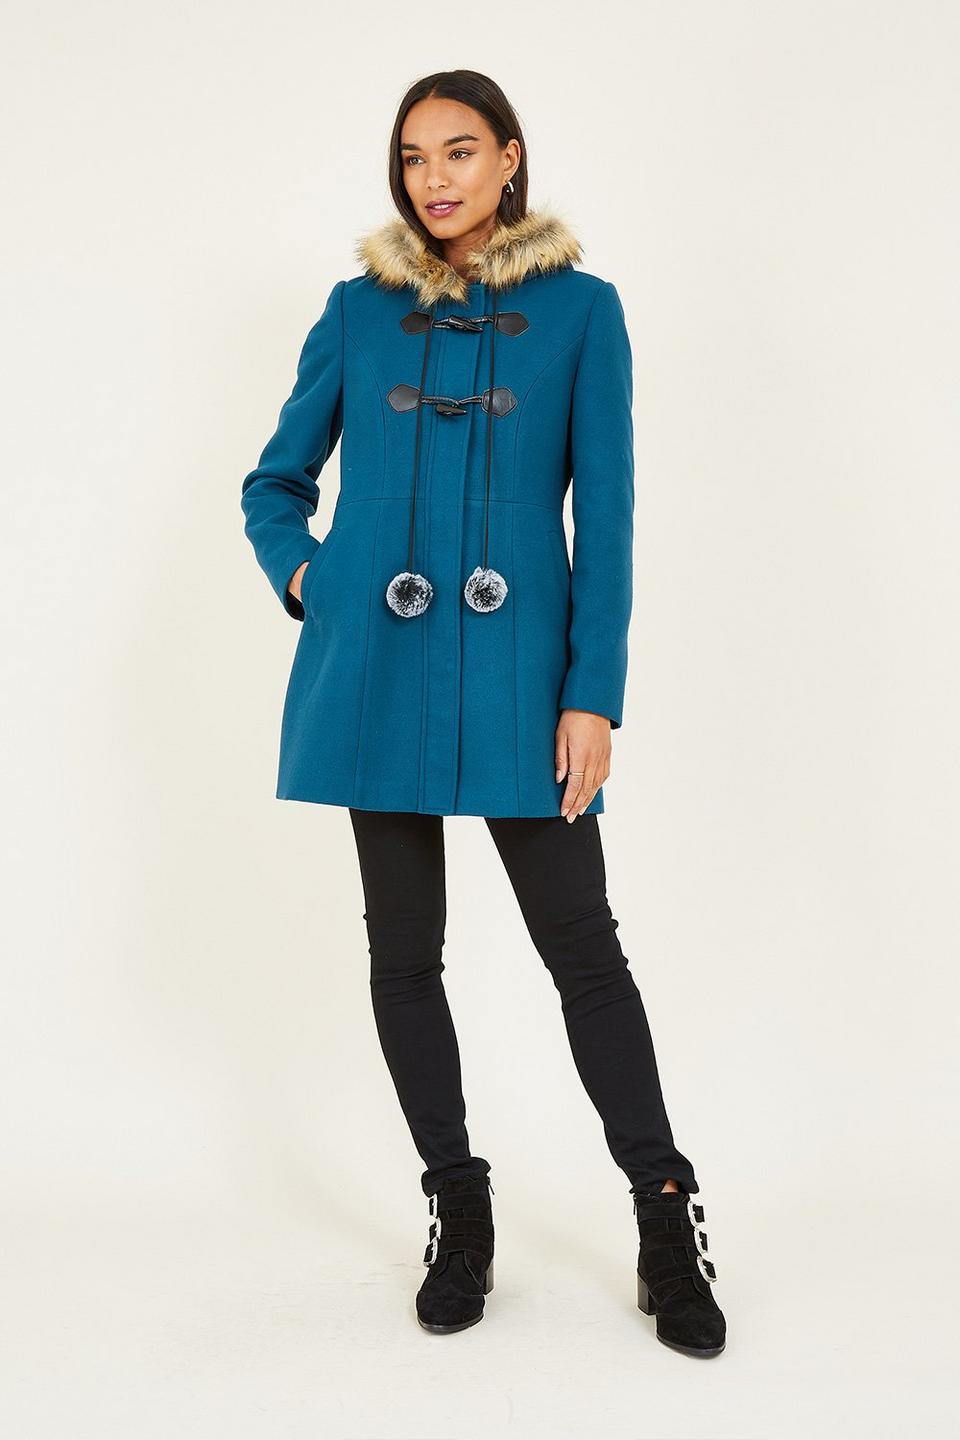 Jackets & Coats | 'Eilish' Duffle Coat With Fur Trim Hood in Teal | Yumi